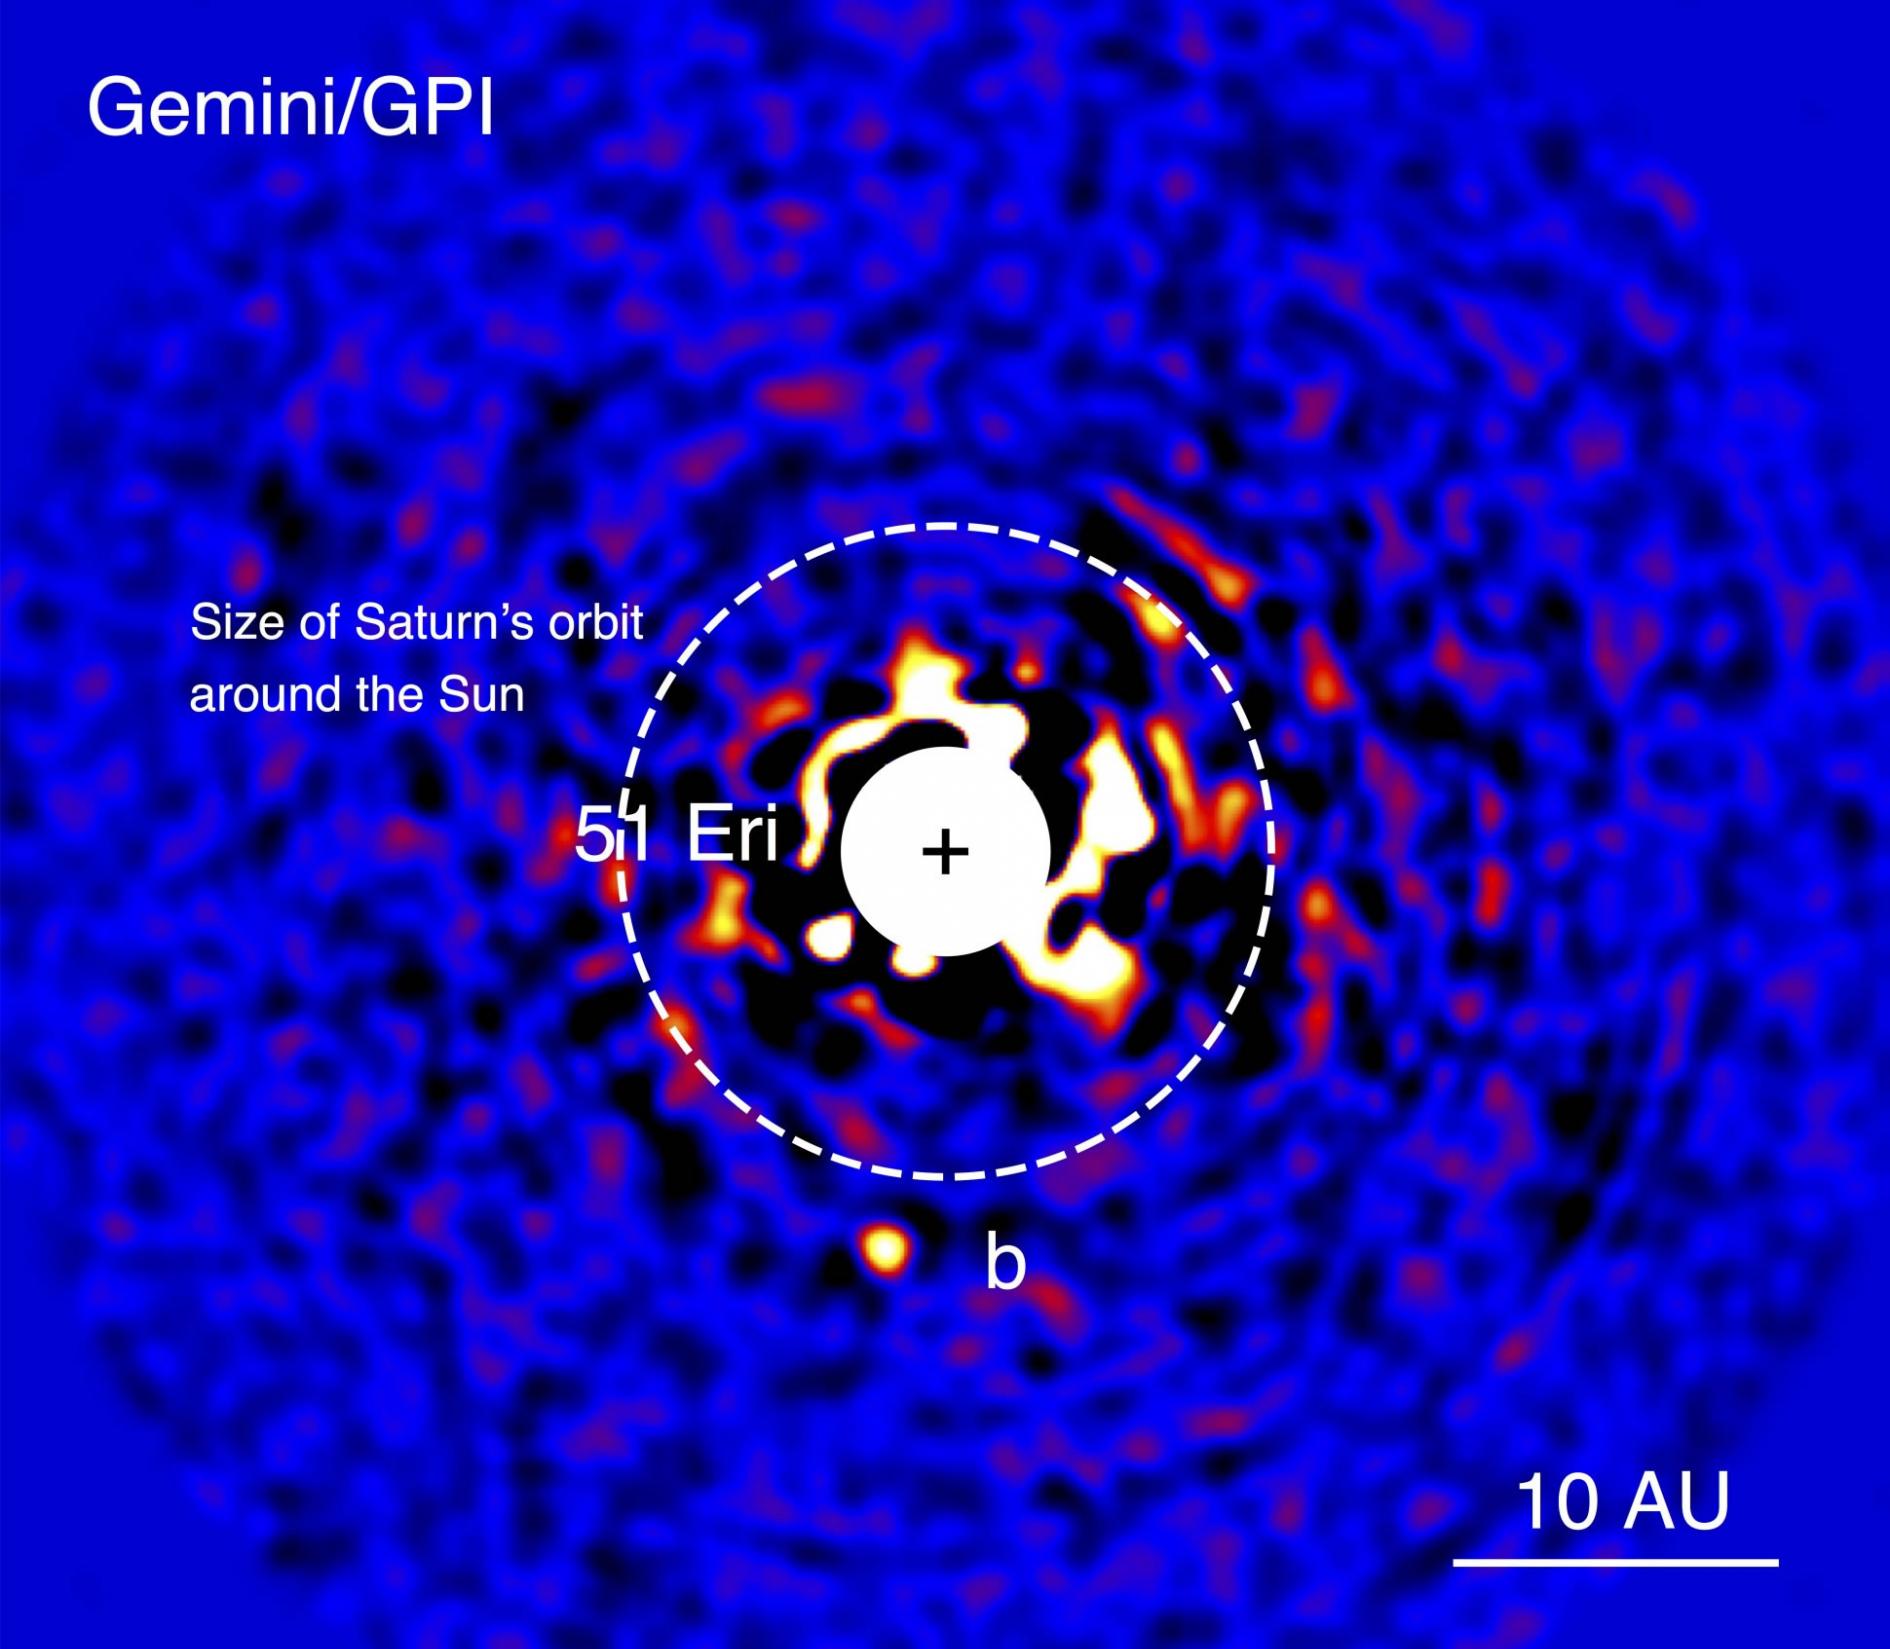 太阳系外行星51 Eridani b 被GPI发现时的图像。恒星明亮的光芒已经被阻断，以便于探测行星极度微弱的光芒。 图片来自蒙特利尔大学以及NRC  Herz